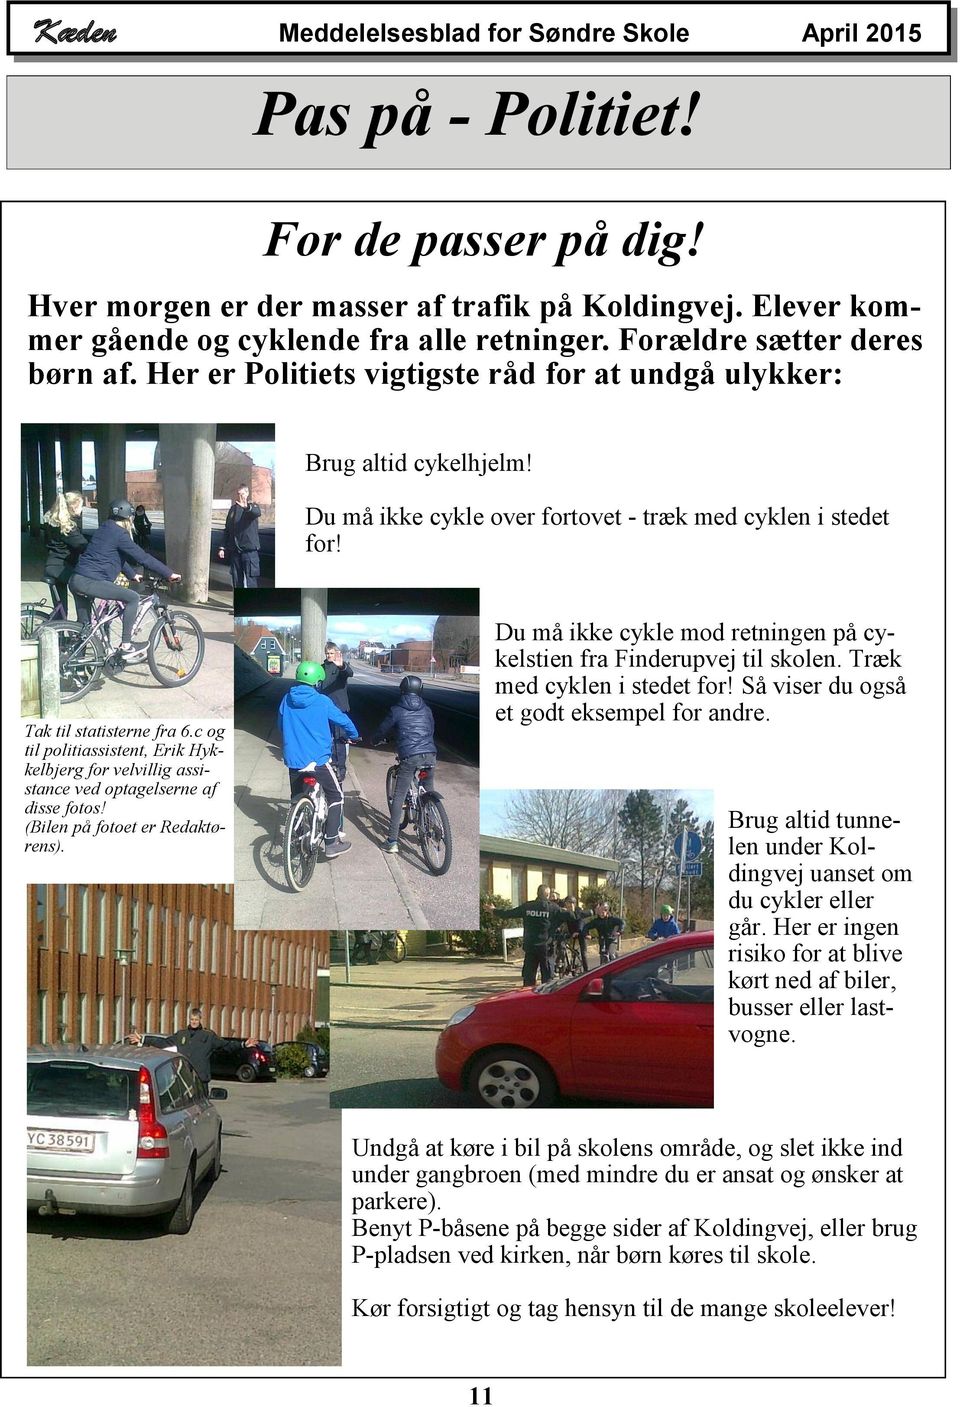 Du må ikke cykle mod retningen på cykelstien fra Finderupvej til skolen. Træk med cyklen i stedet for! Så viser du også et godt eksempel for andre. Tak til statisterne fra 6.